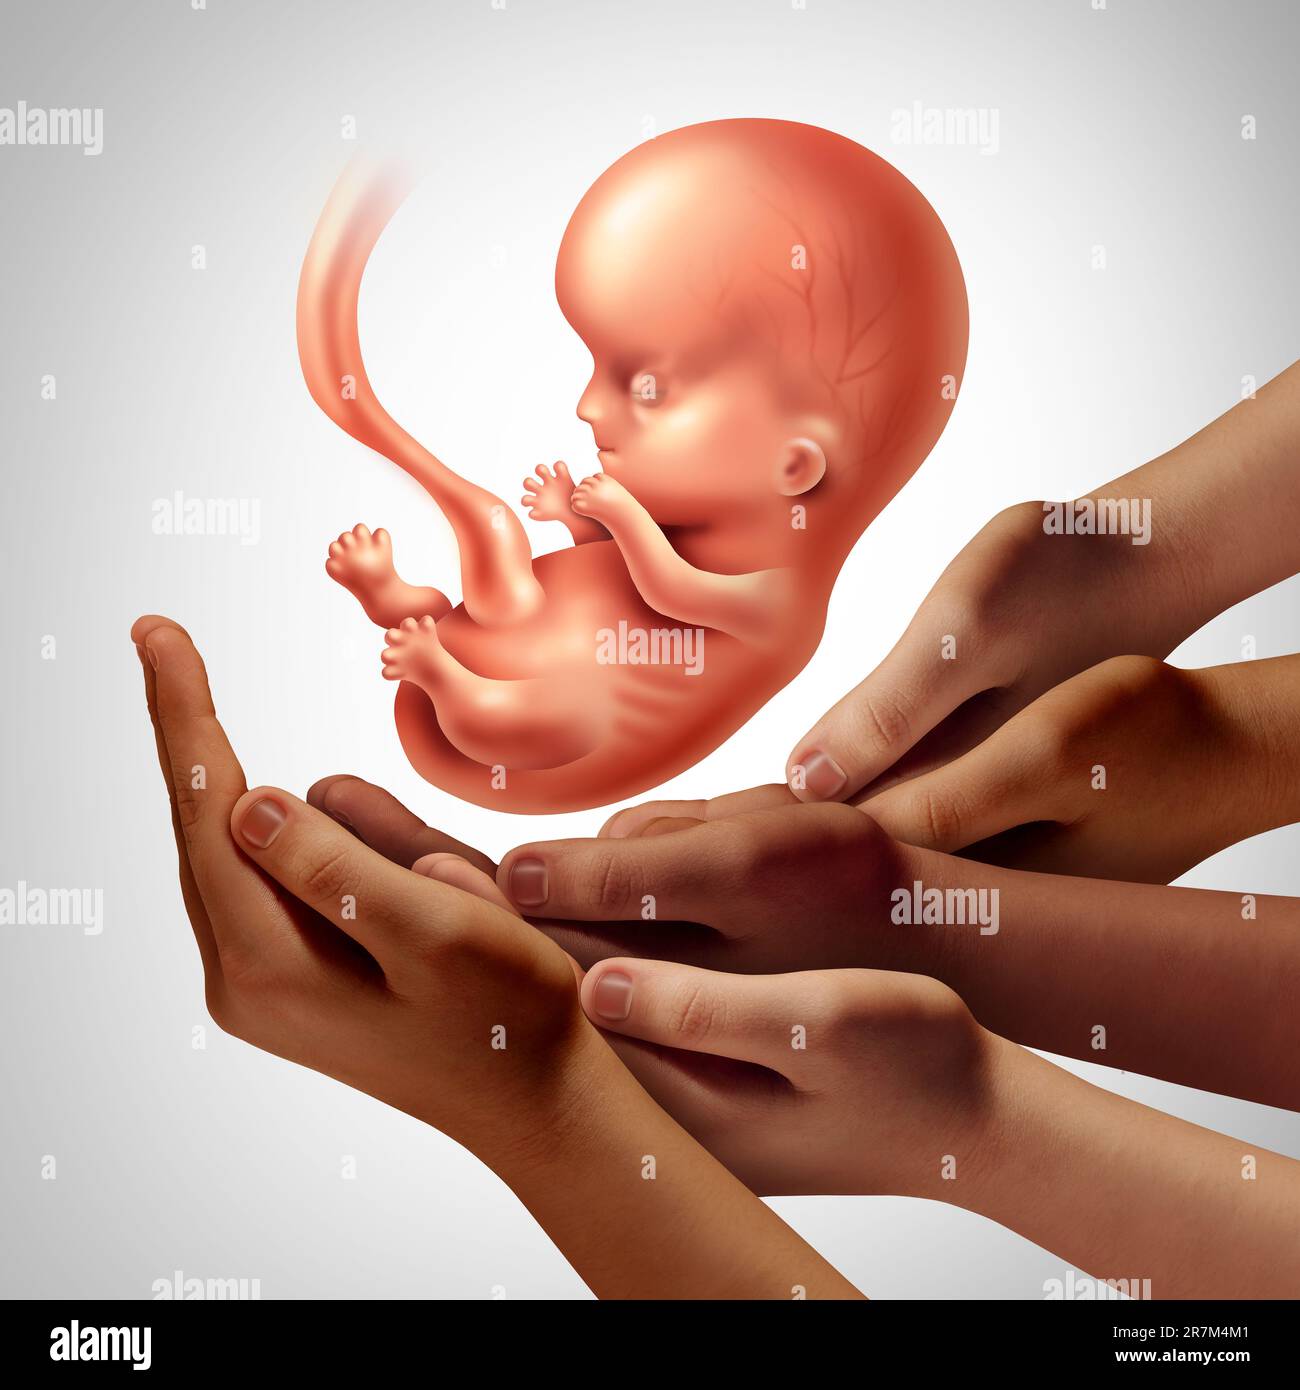 Embrione sintetico e embrioni modello come gruppo di ricercatori che detengono un feto umano come simbolo per la genetica e l'ostetricia o la gravidanza precoce Foto Stock